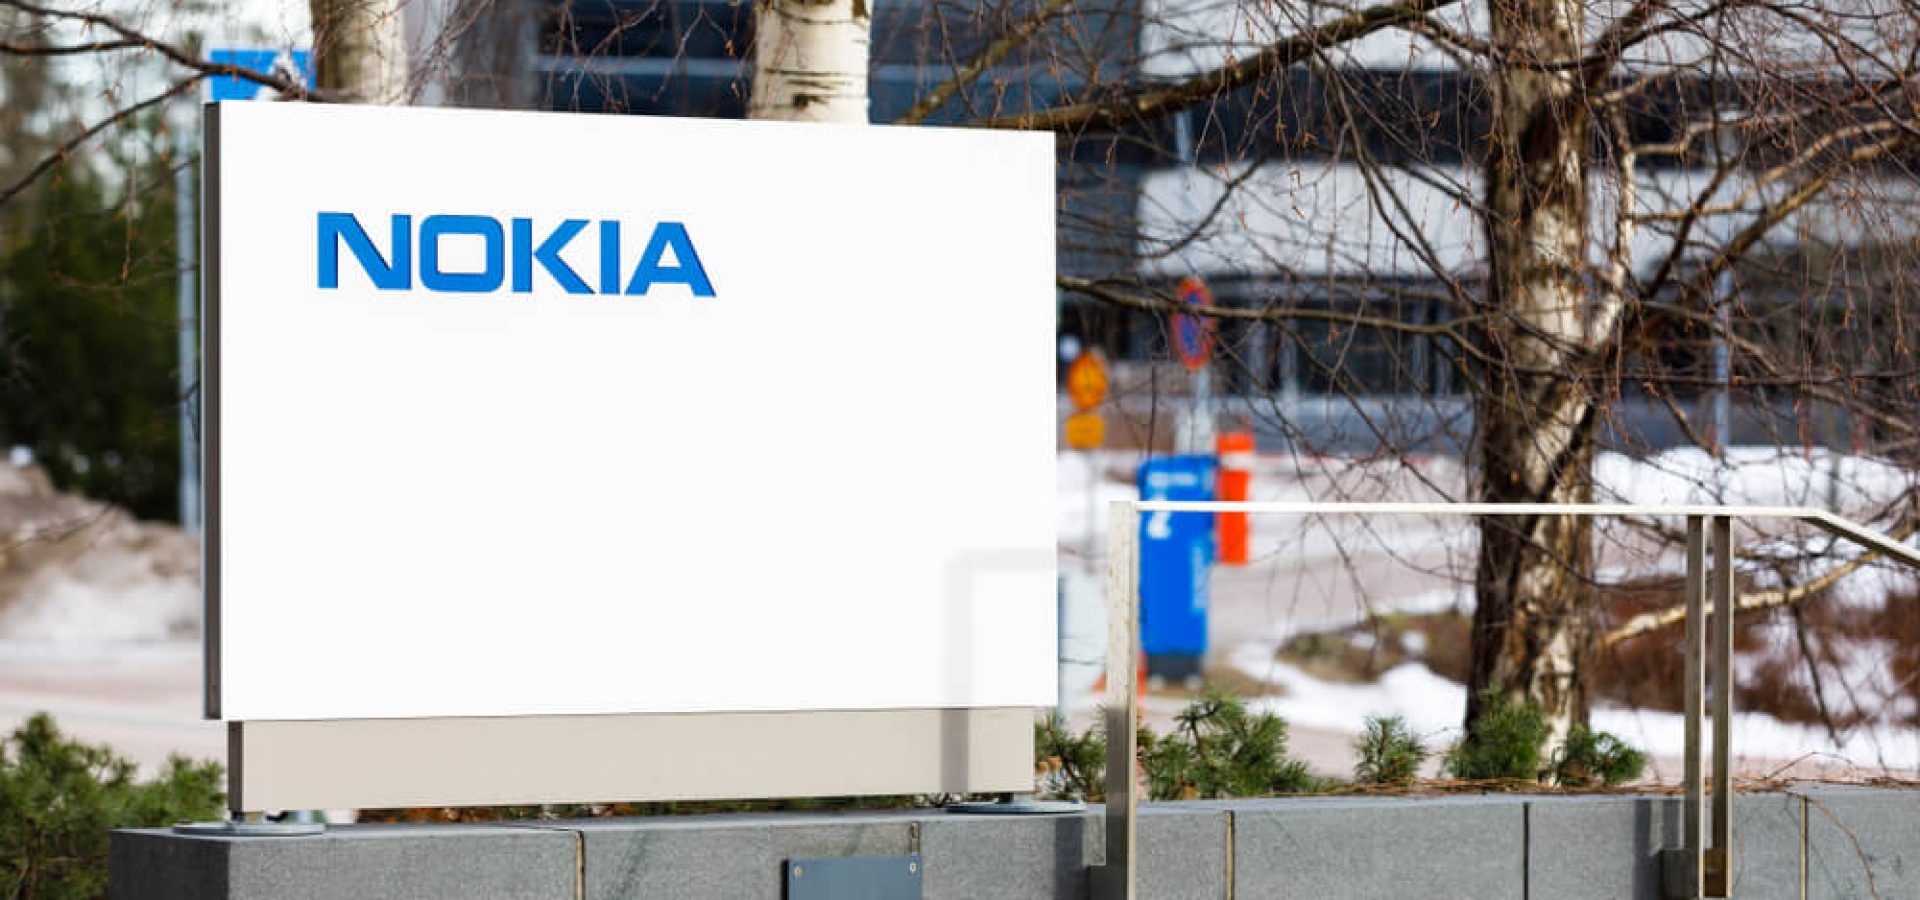 Nokia: Nokia company name on white board next to Nokia head quarter.